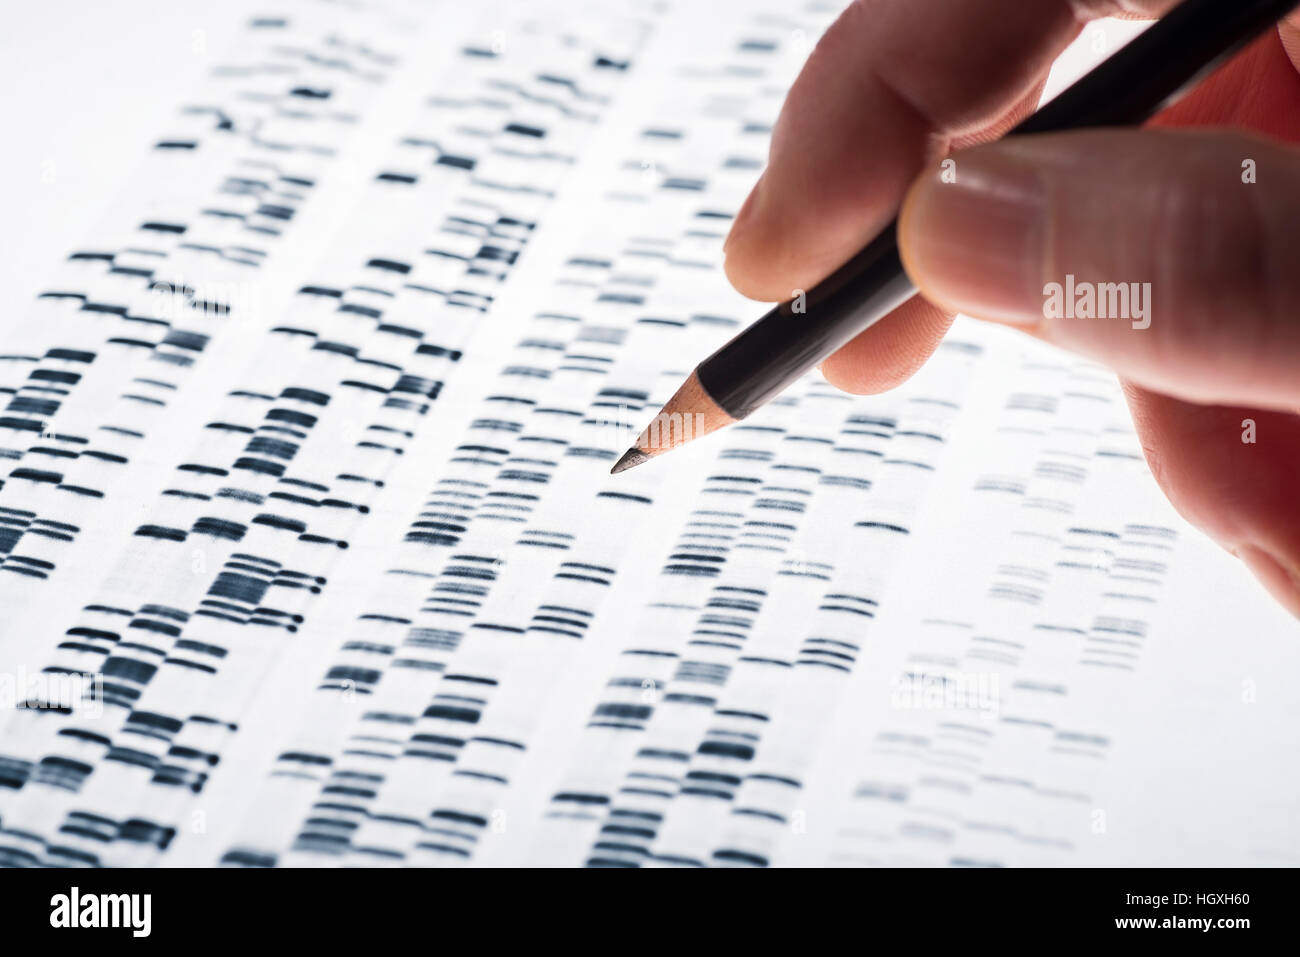 Les scientifiques ont étudié l'ADN gel qui est utilisé dans la génétique, la médecine, la biologie, la recherche et la médecine légale. pharma Banque D'Images